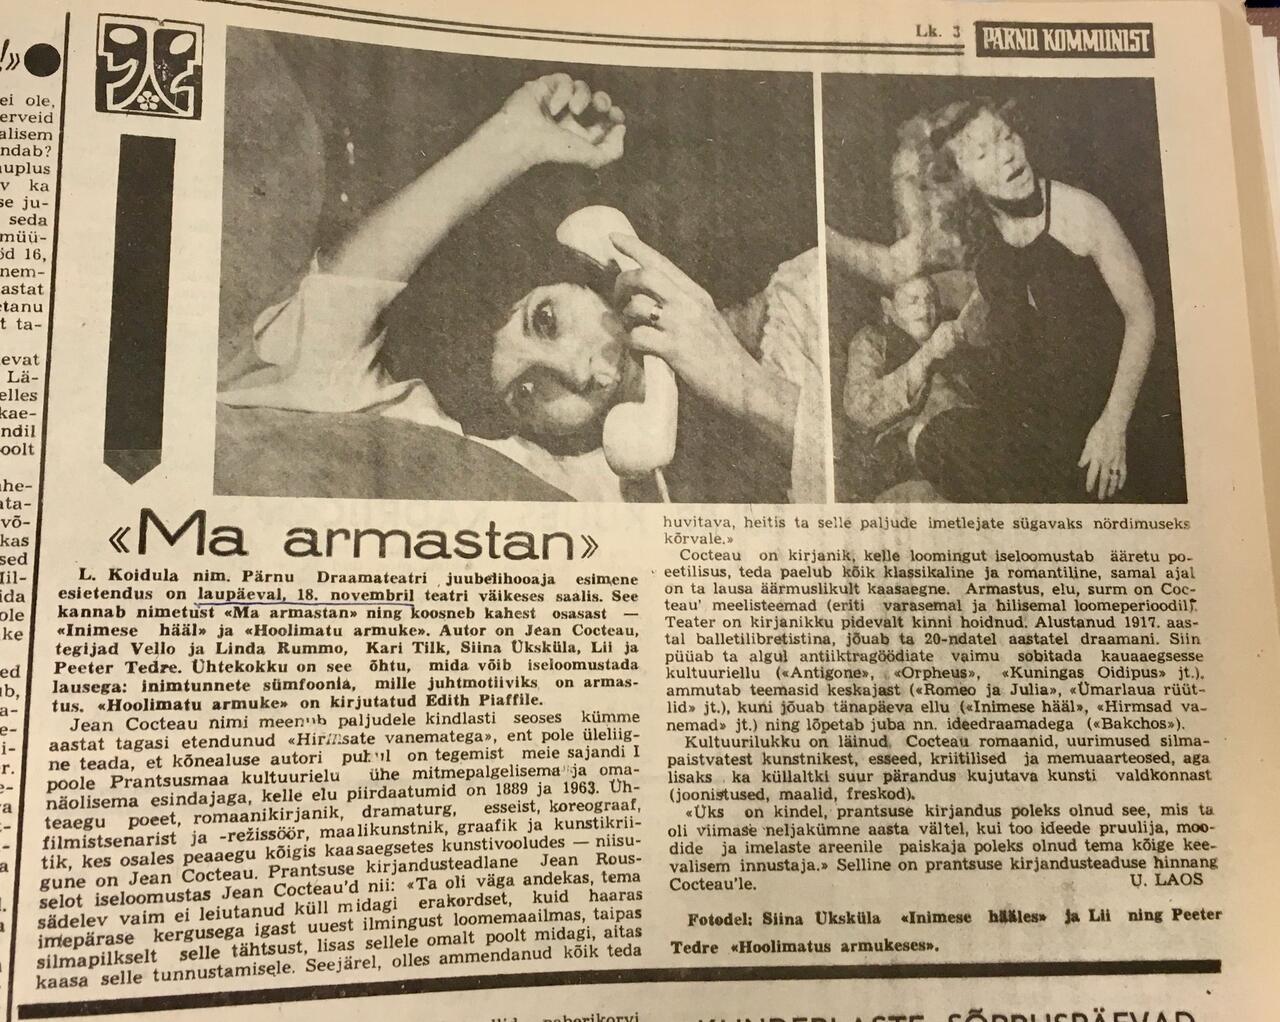 Pärnu Kommunist 17. nov. 1978